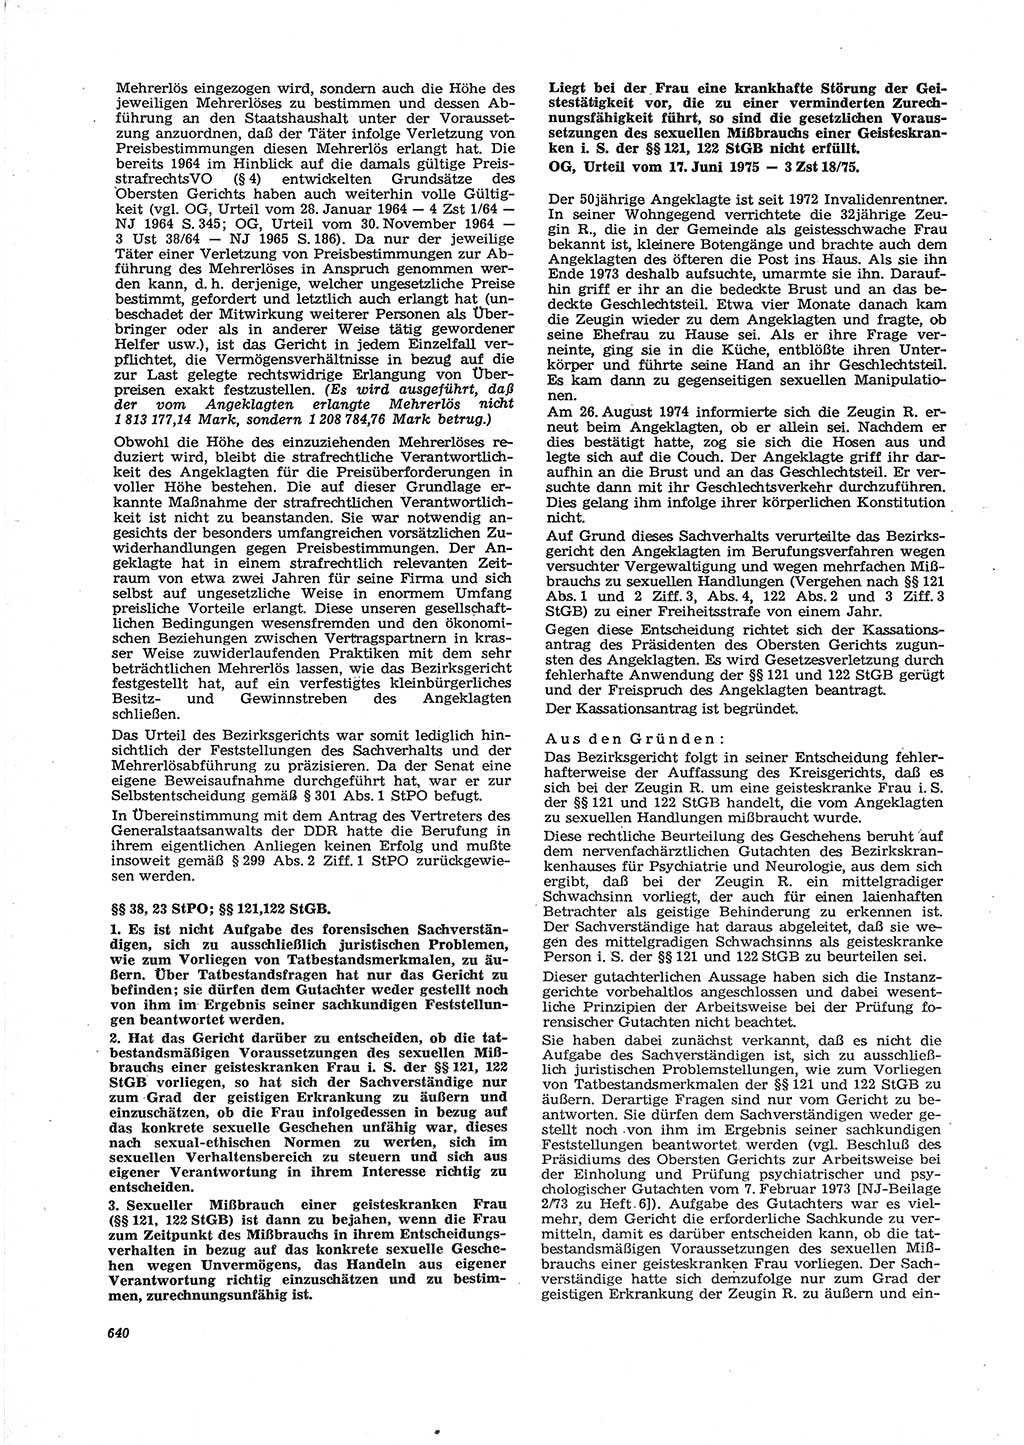 Neue Justiz (NJ), Zeitschrift für Recht und Rechtswissenschaft [Deutsche Demokratische Republik (DDR)], 29. Jahrgang 1975, Seite 640 (NJ DDR 1975, S. 640)